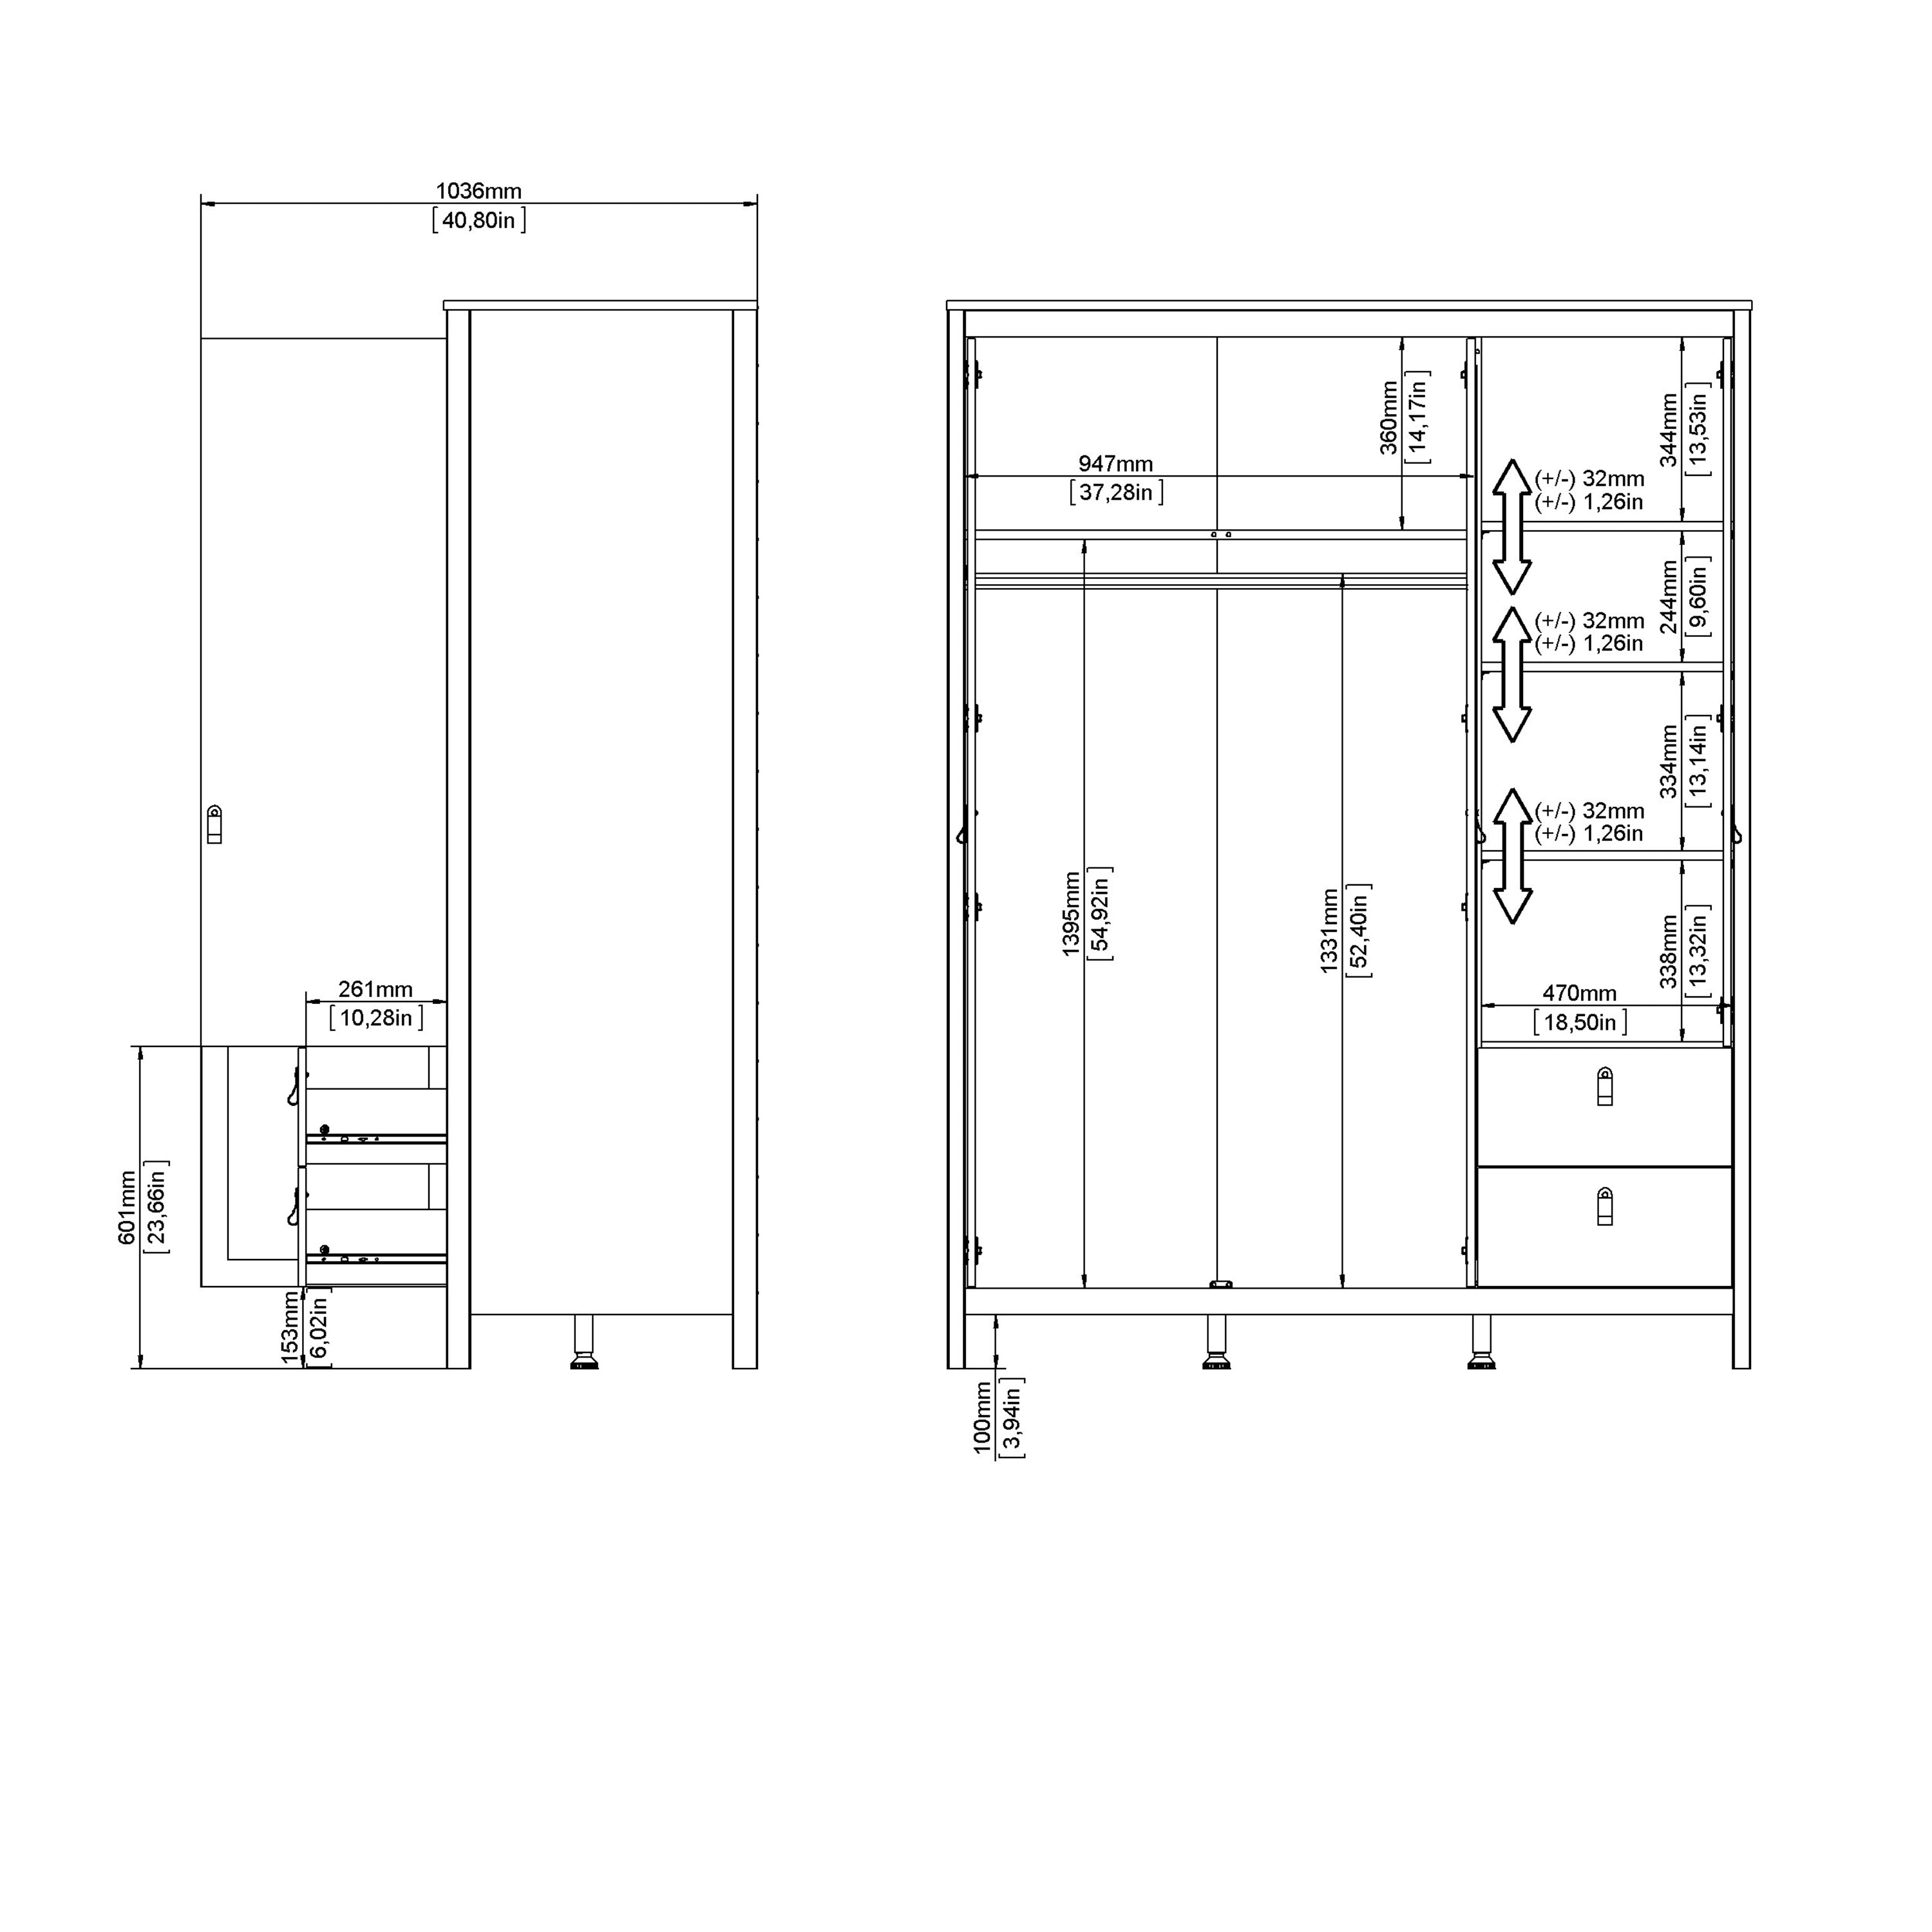 Barcelona Wardrobe with 2 Doors 1 Mirror Door 2 Drawers in Matt Black Furniture To Go Ltd